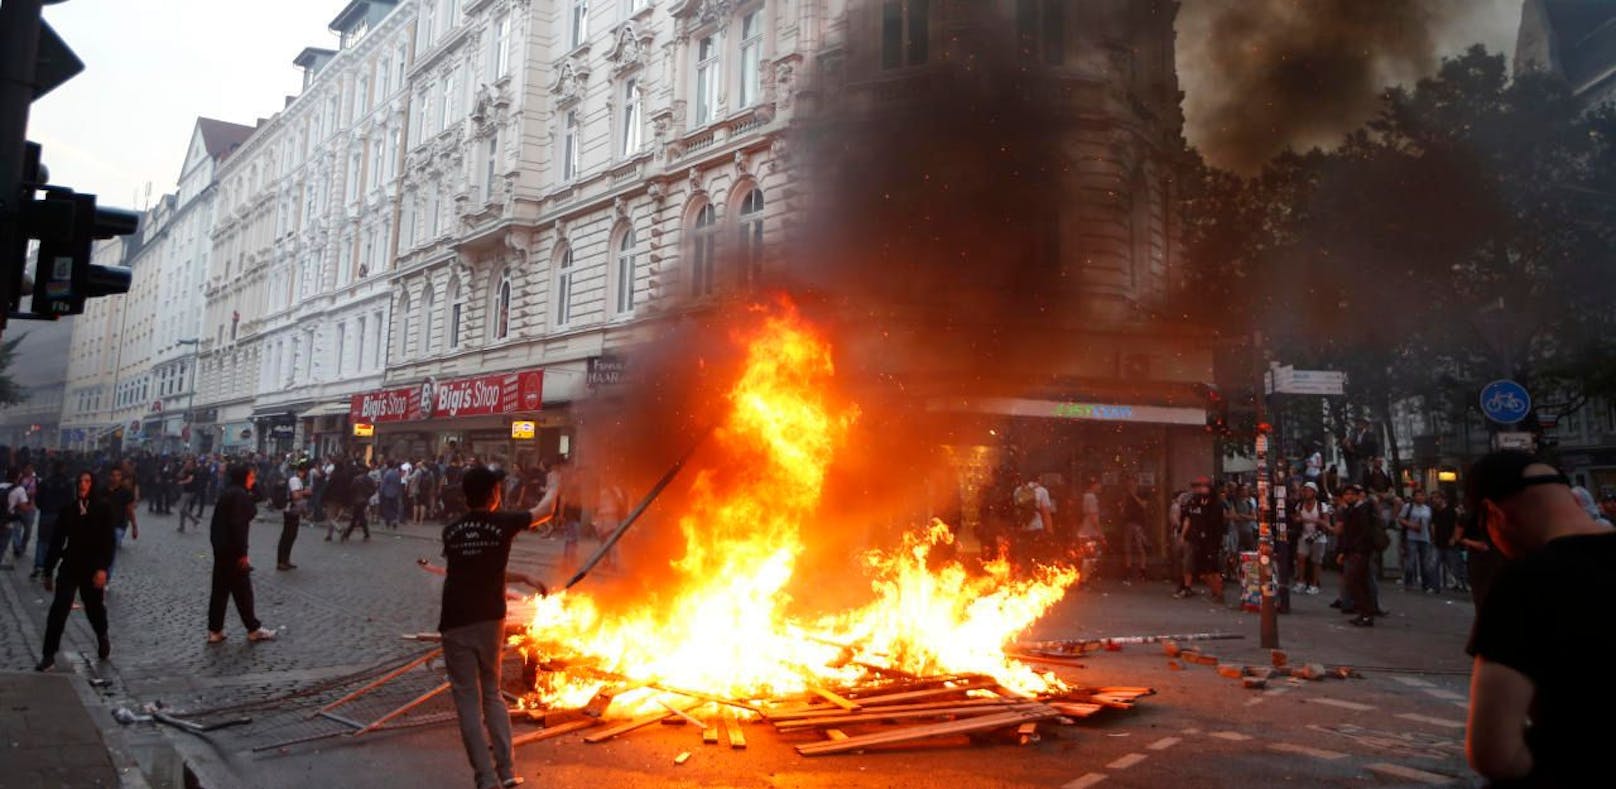 "Hölle" G20-Protest: Blut, Feuer und Schussabgabe